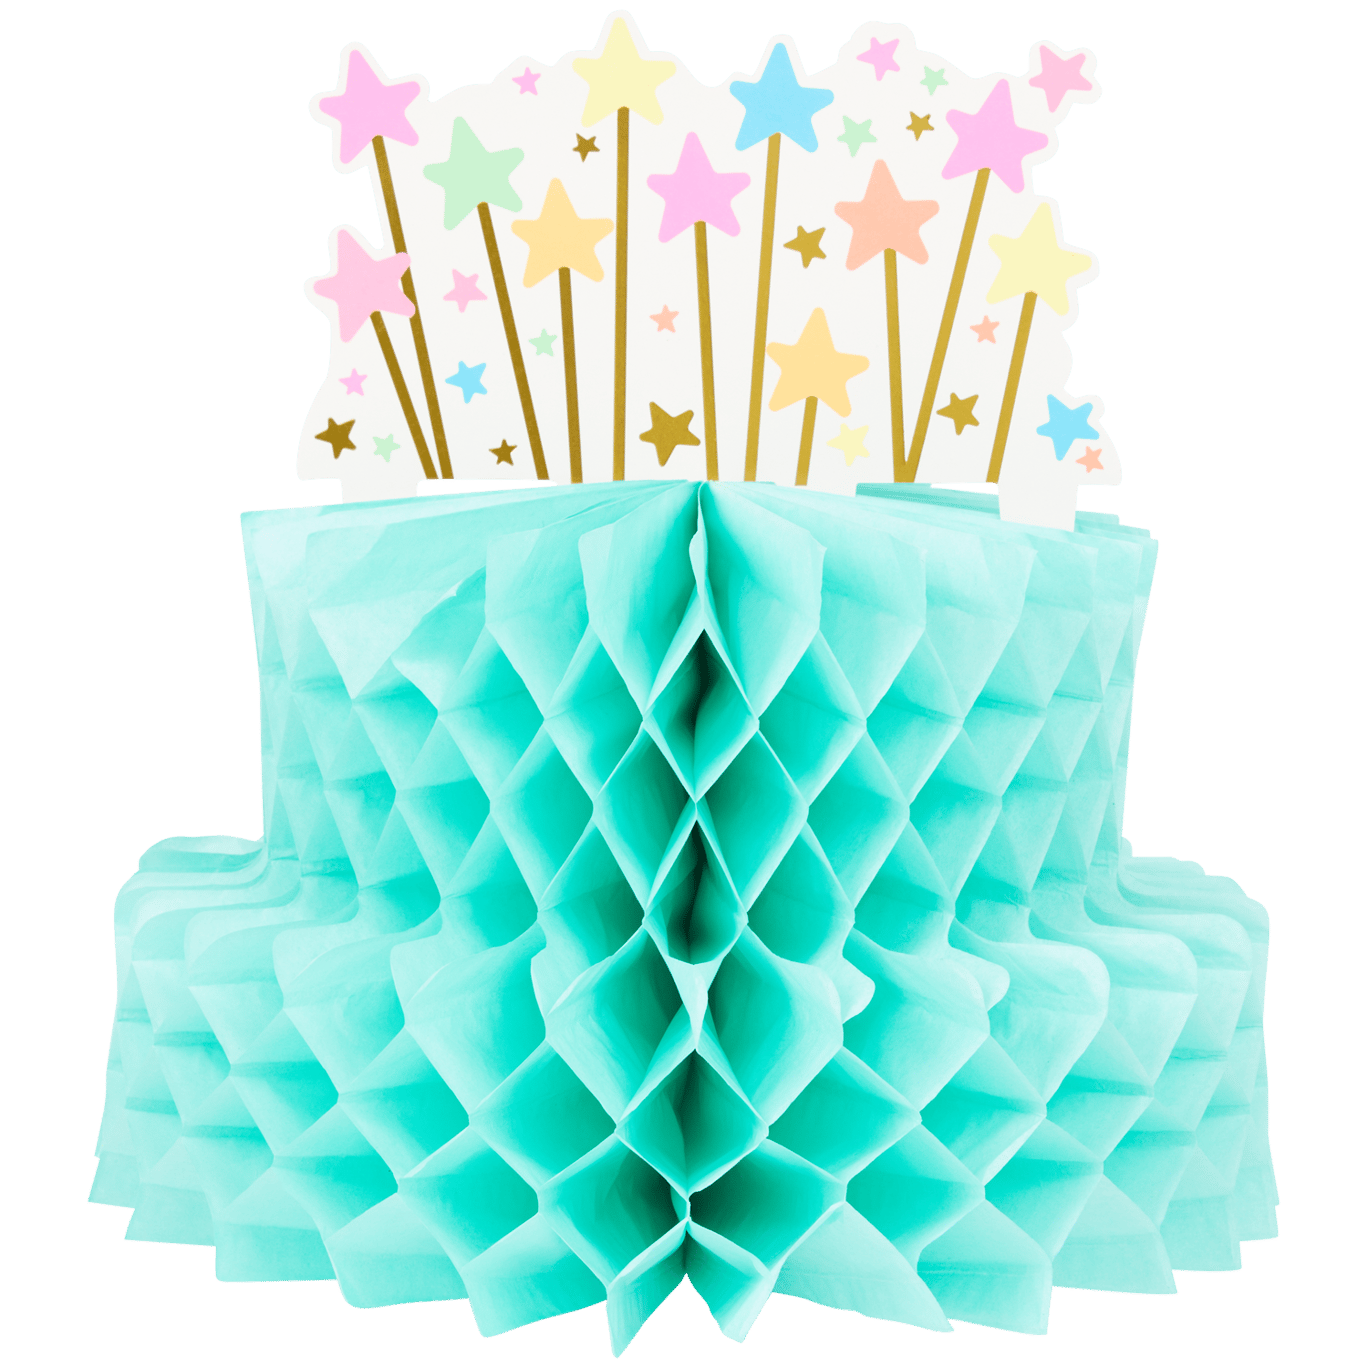 Ciasto-dekoracja w kształcie plastra miodu